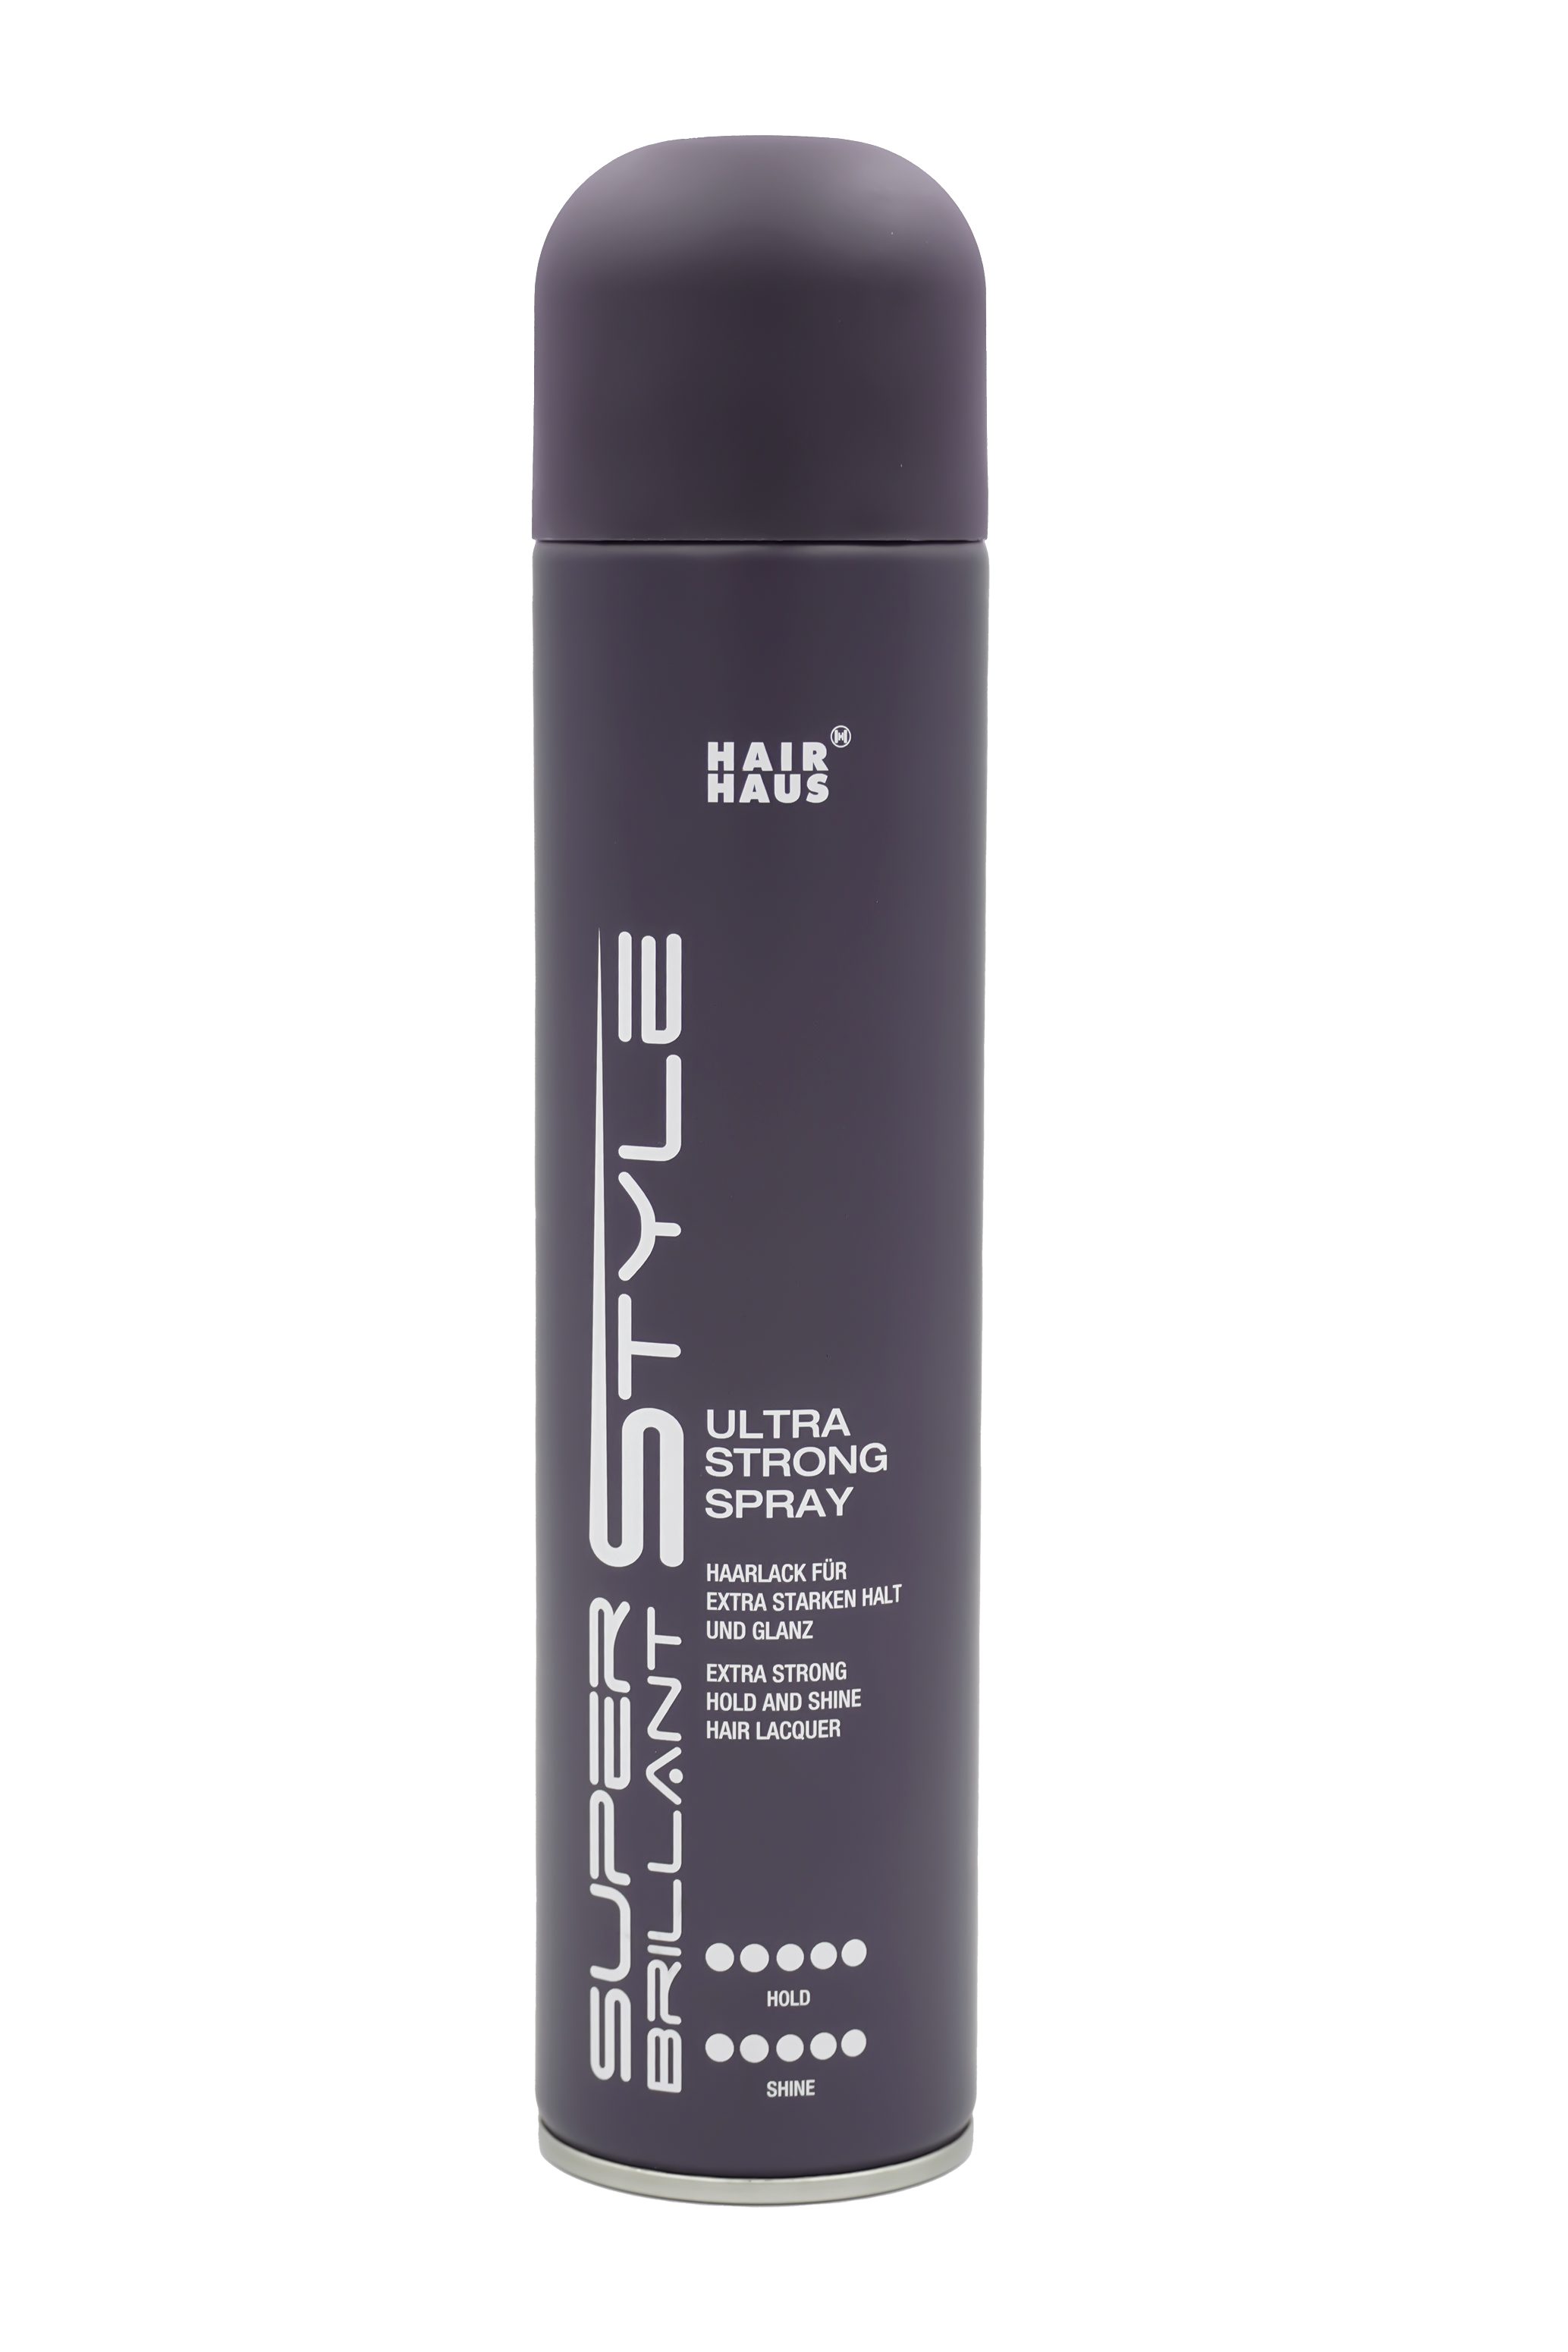 sbs Haarspray SB Style Ultra Strong Spray 300ml Haarlack